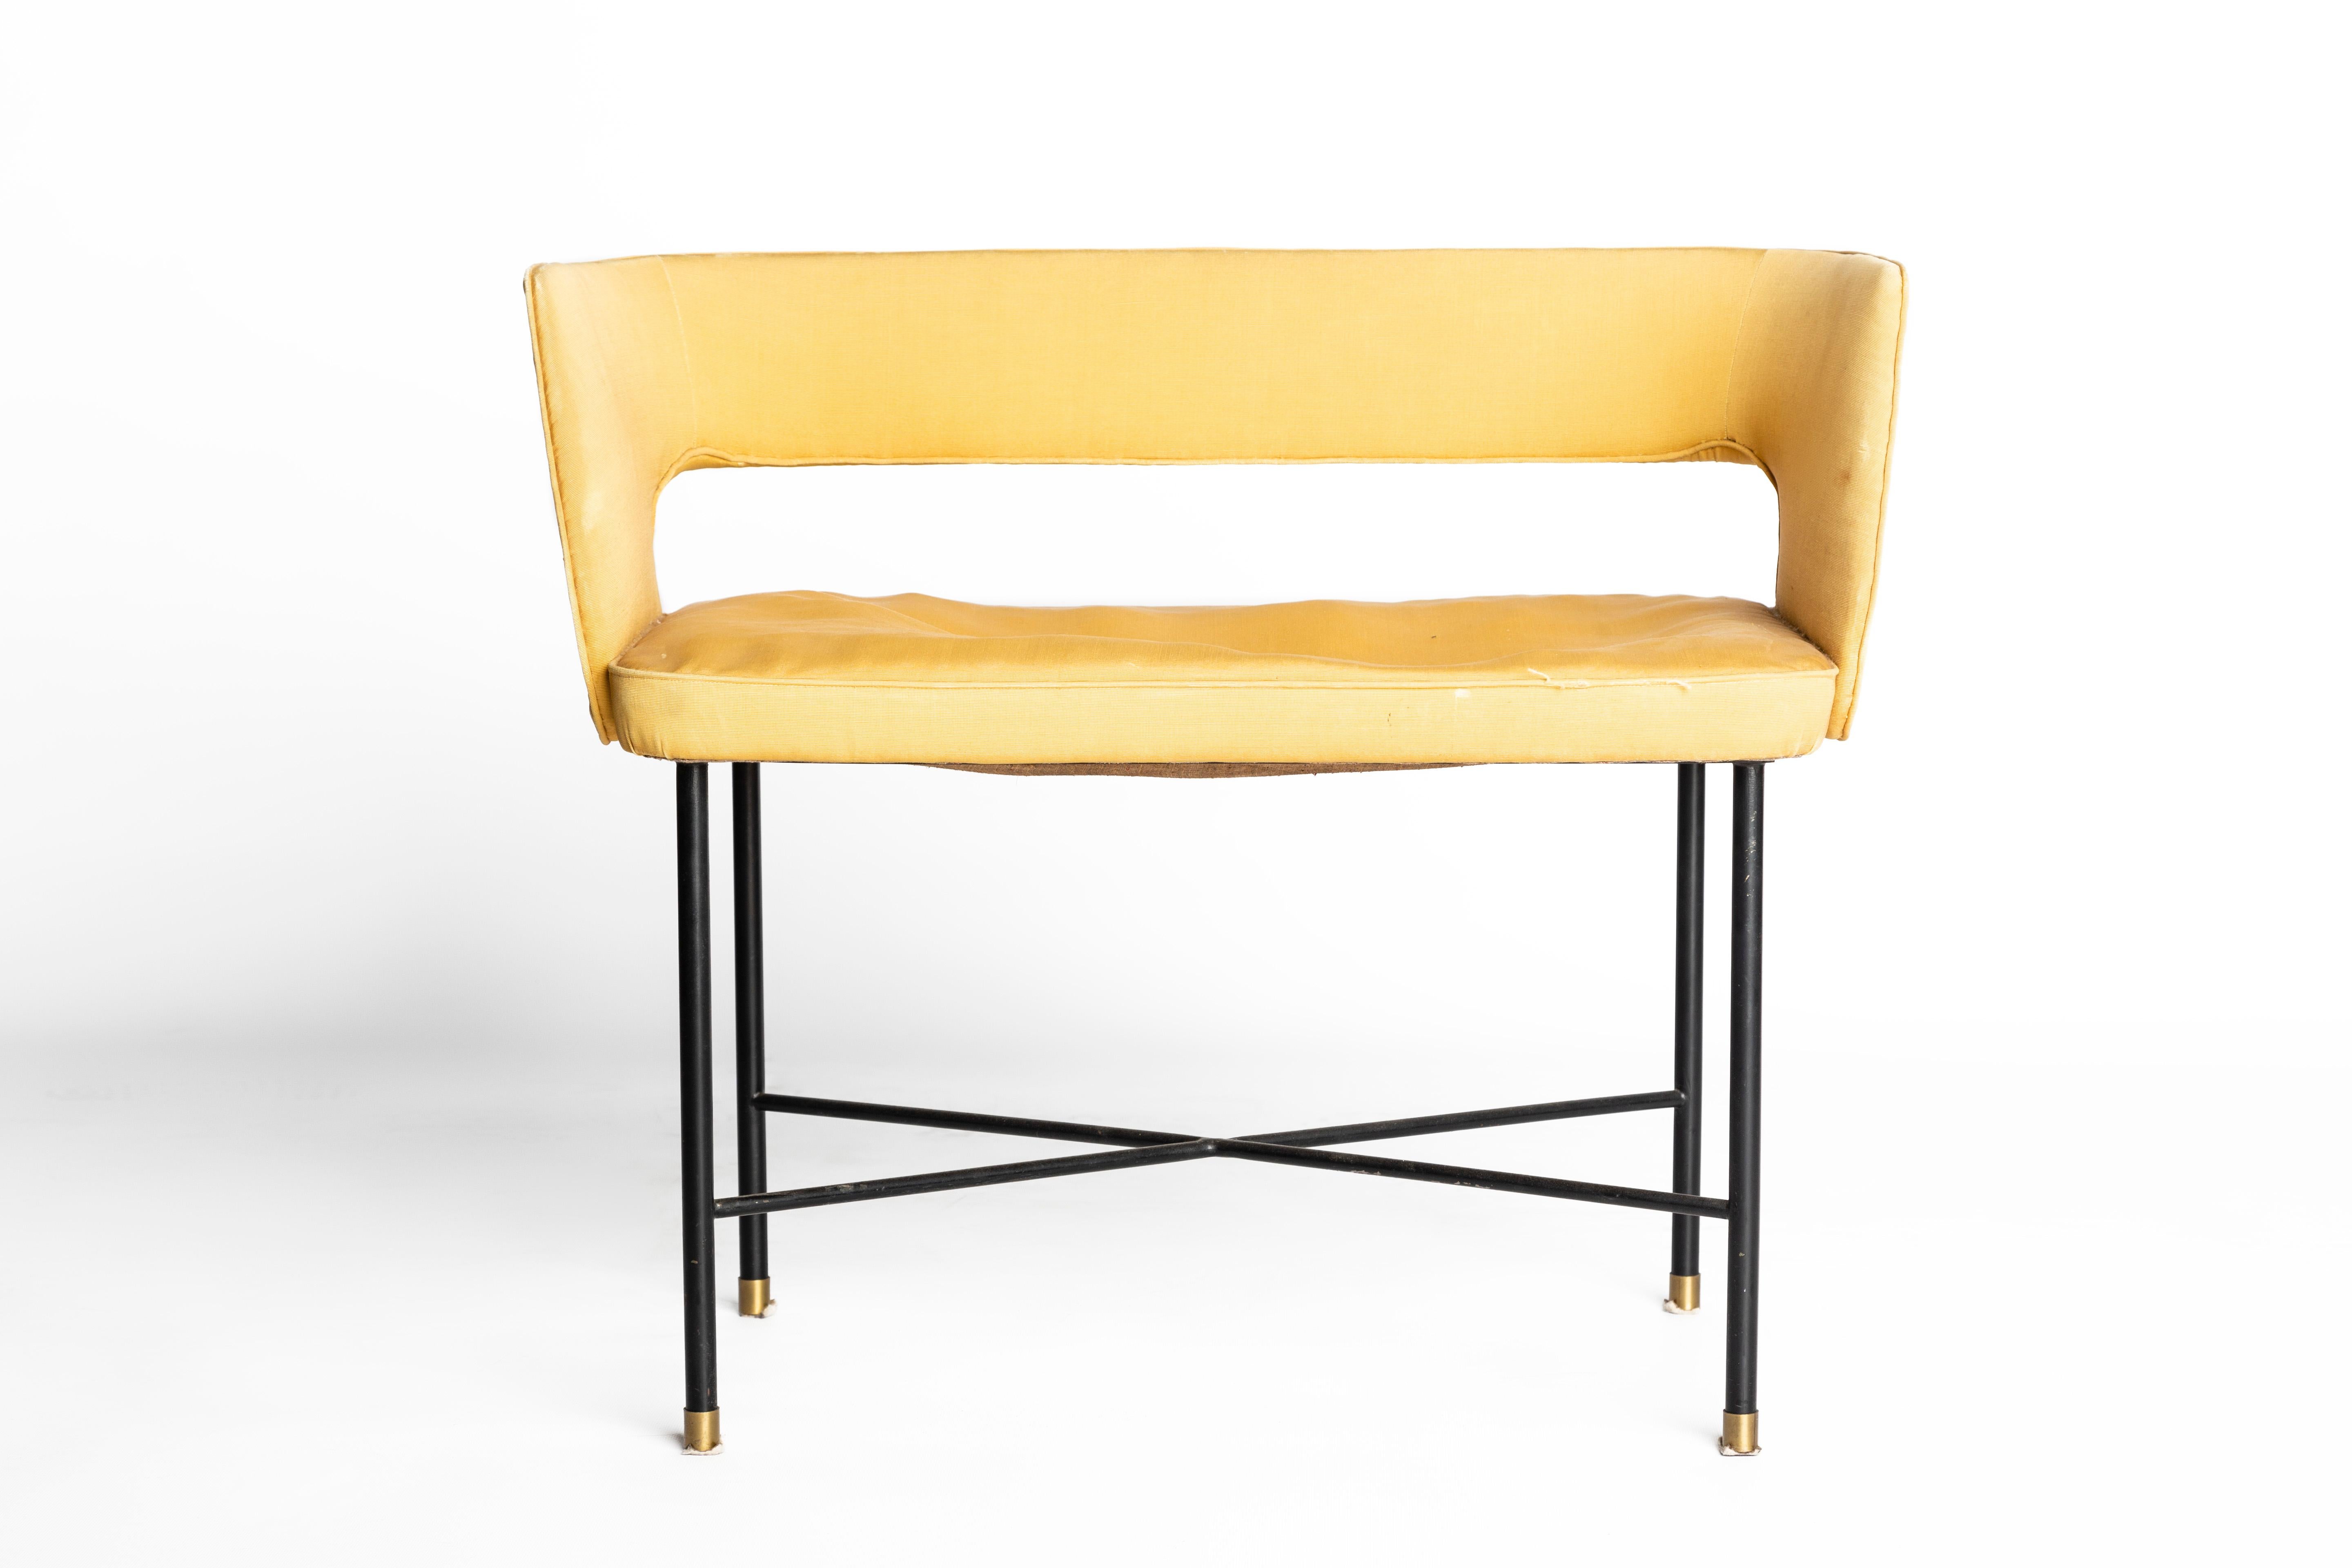 Paire de sièges conçus par Gigi Radice et Enrico Meroni.
Structure en astragale en métal verni, rembourrage en tissu, extrémités en laiton.
Réalisé en Italie, dans les années 1950.
Bonnes conditions.